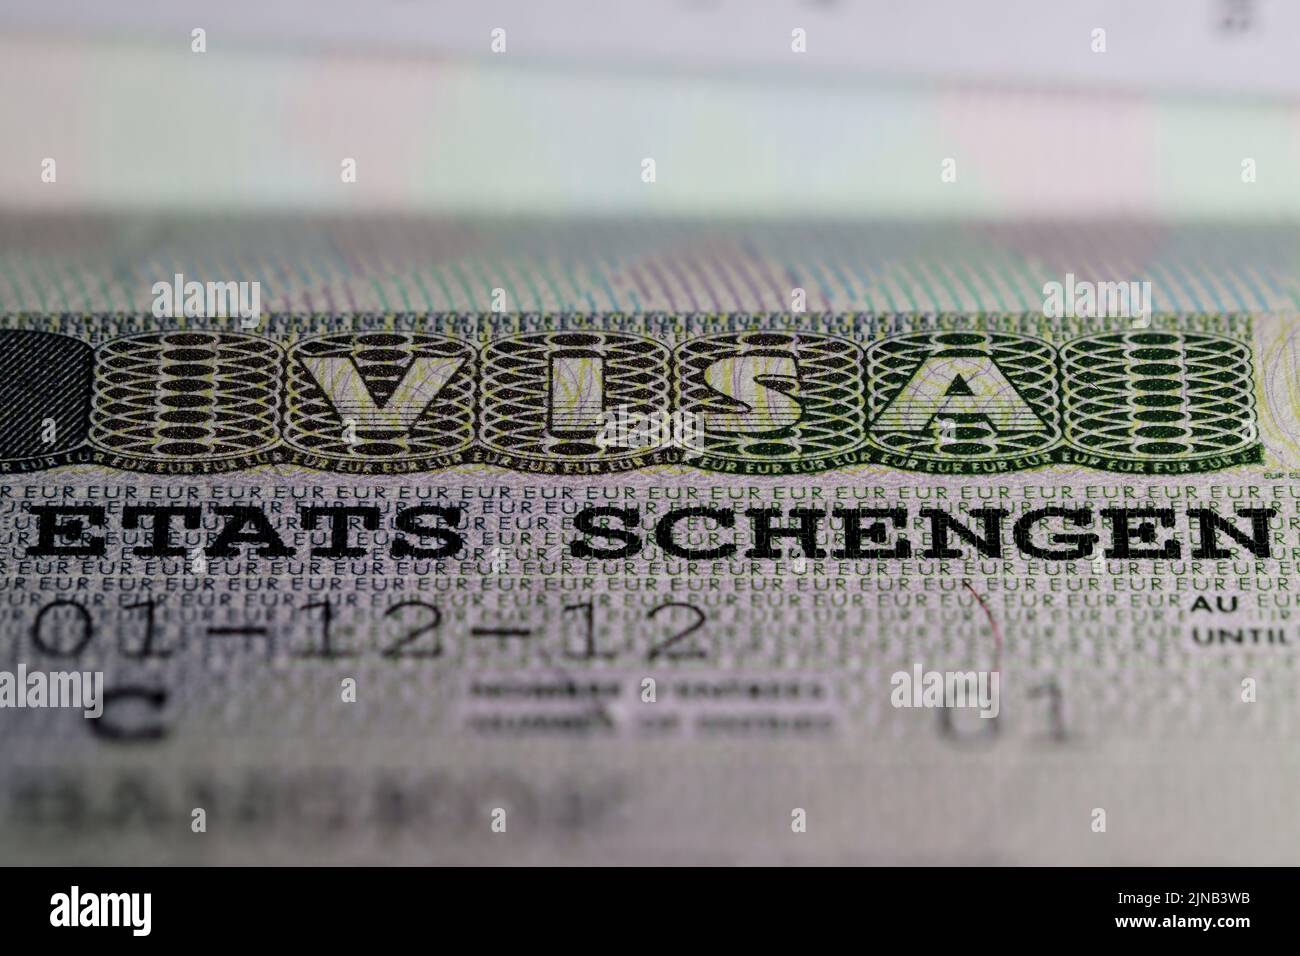 Schengen States visa in passport Stock Photo